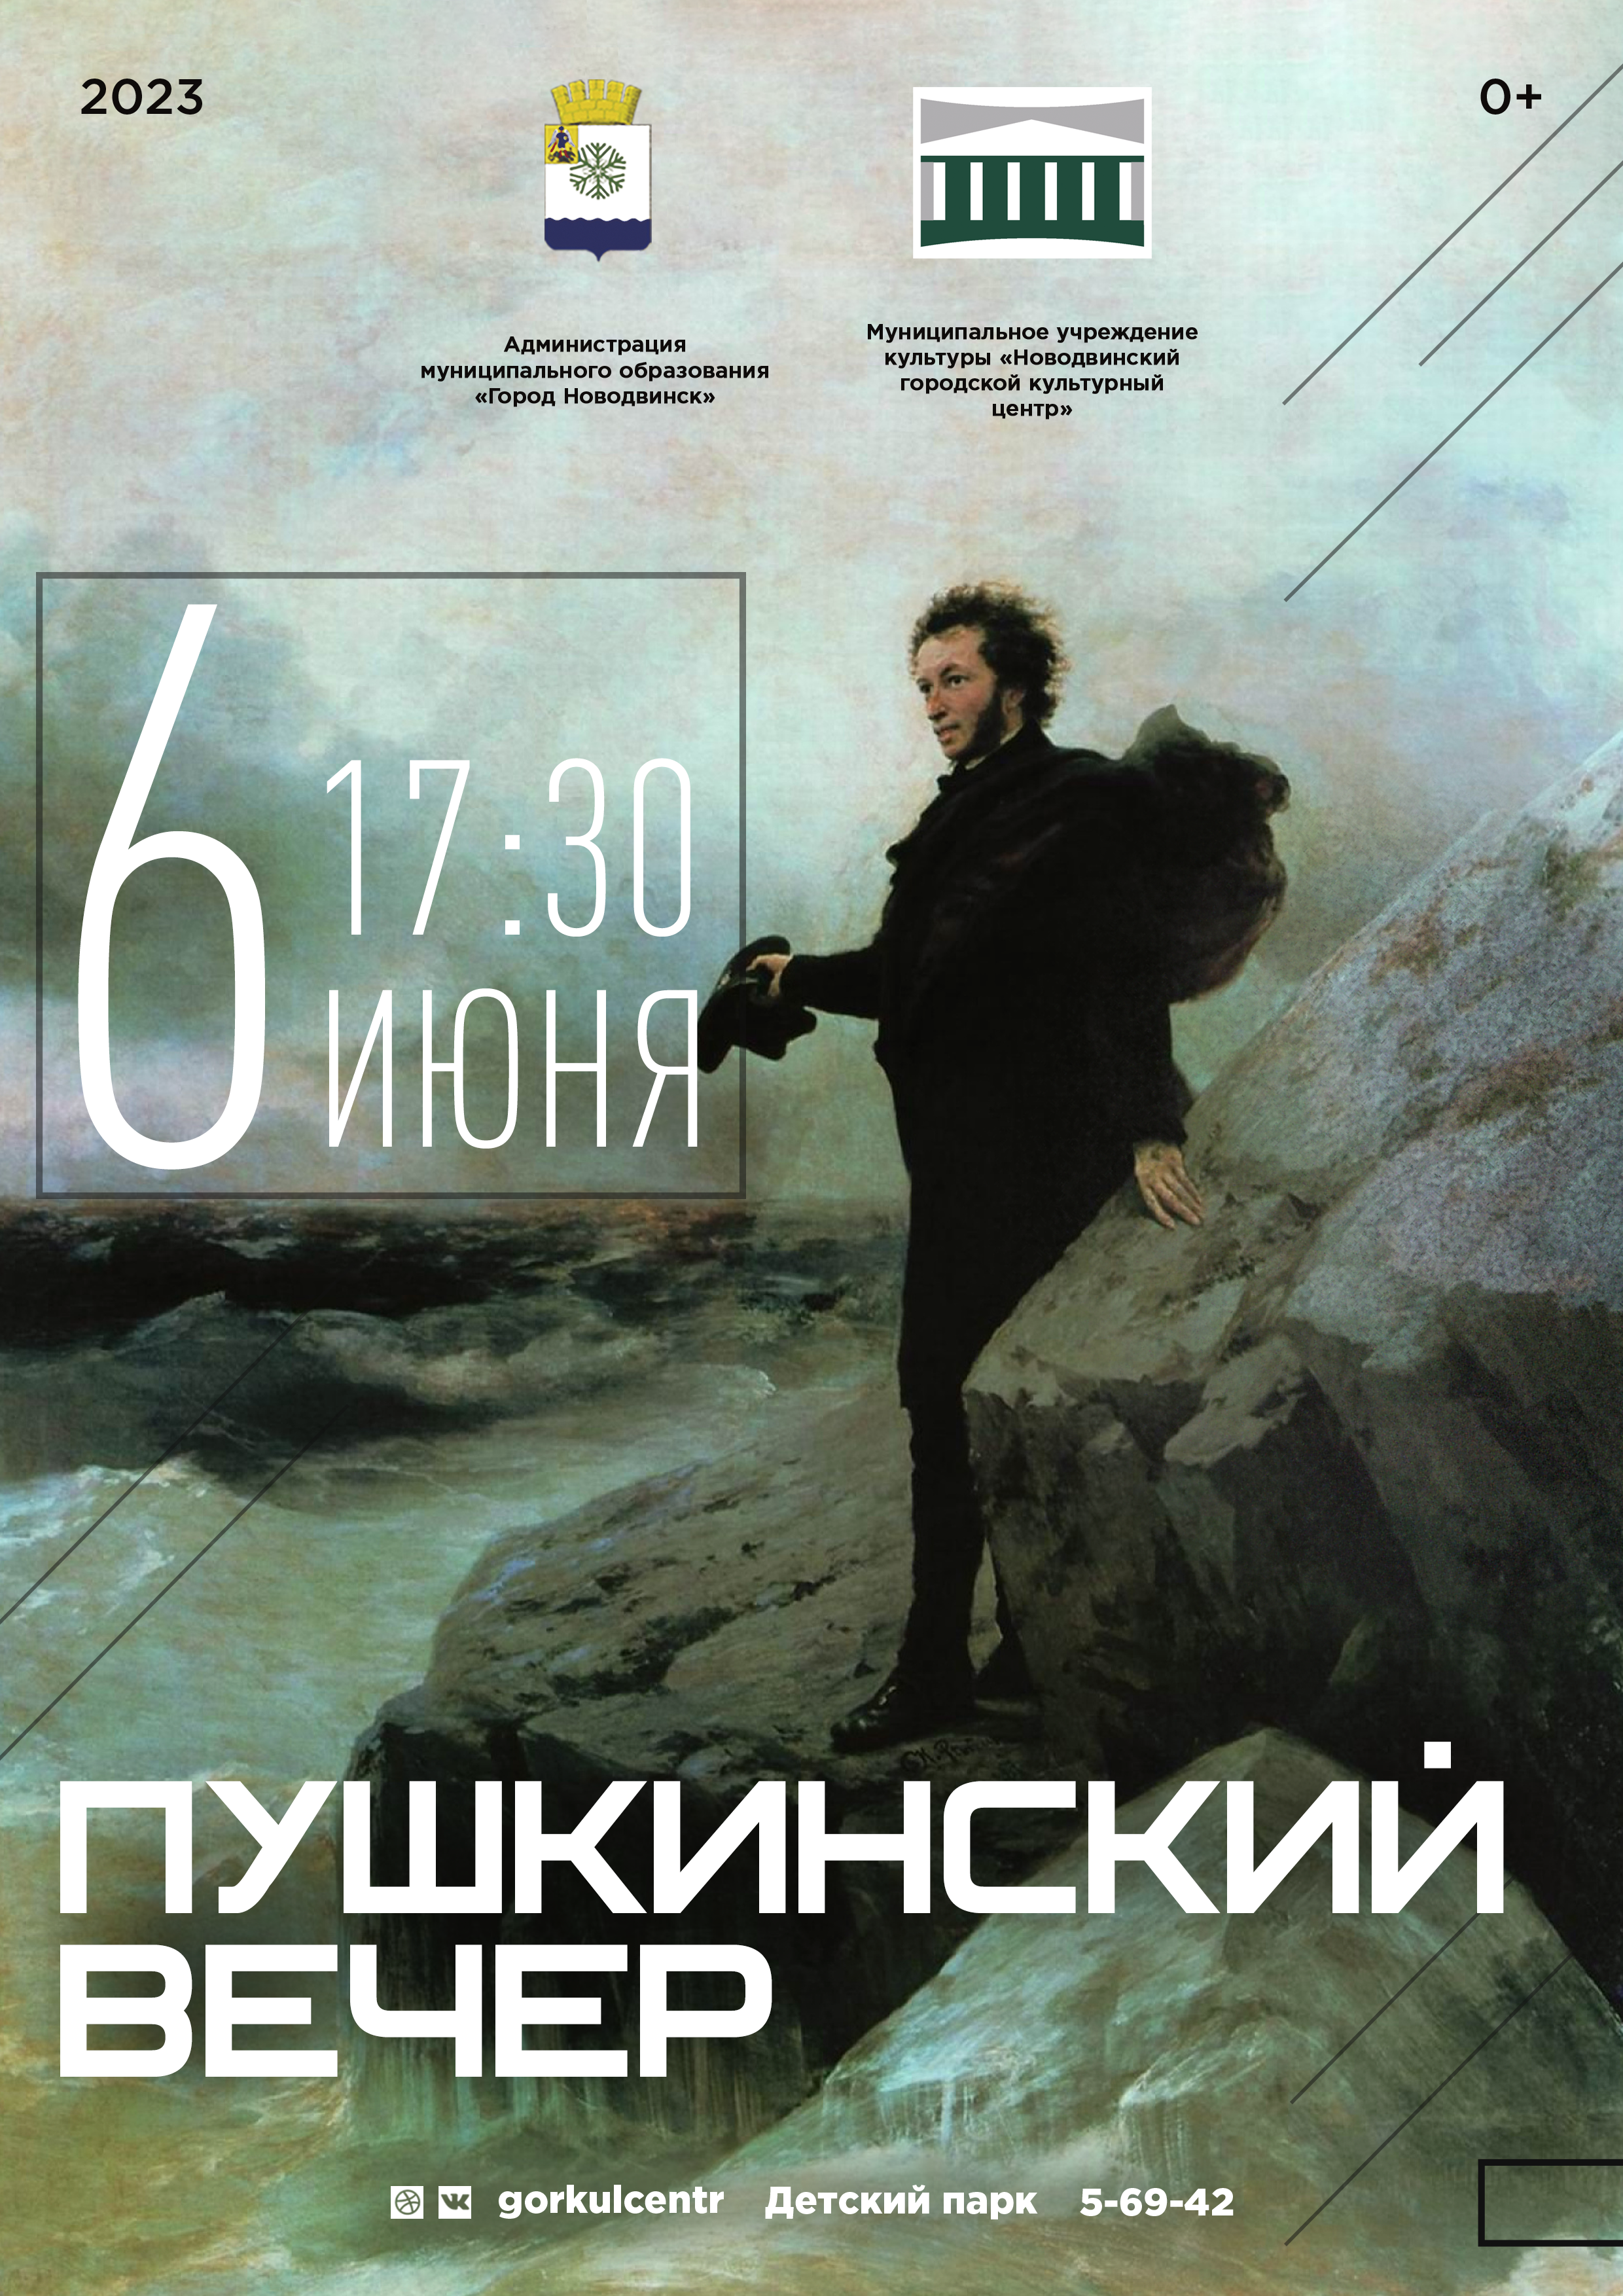 6 июня в России отмечается День рождения поэта, драматурга и прозаика Александра Сергеевича Пушкина. Он явился основателем нового, классического искусства, сравнимого лишь с лучшими образцами мировой эстетики.